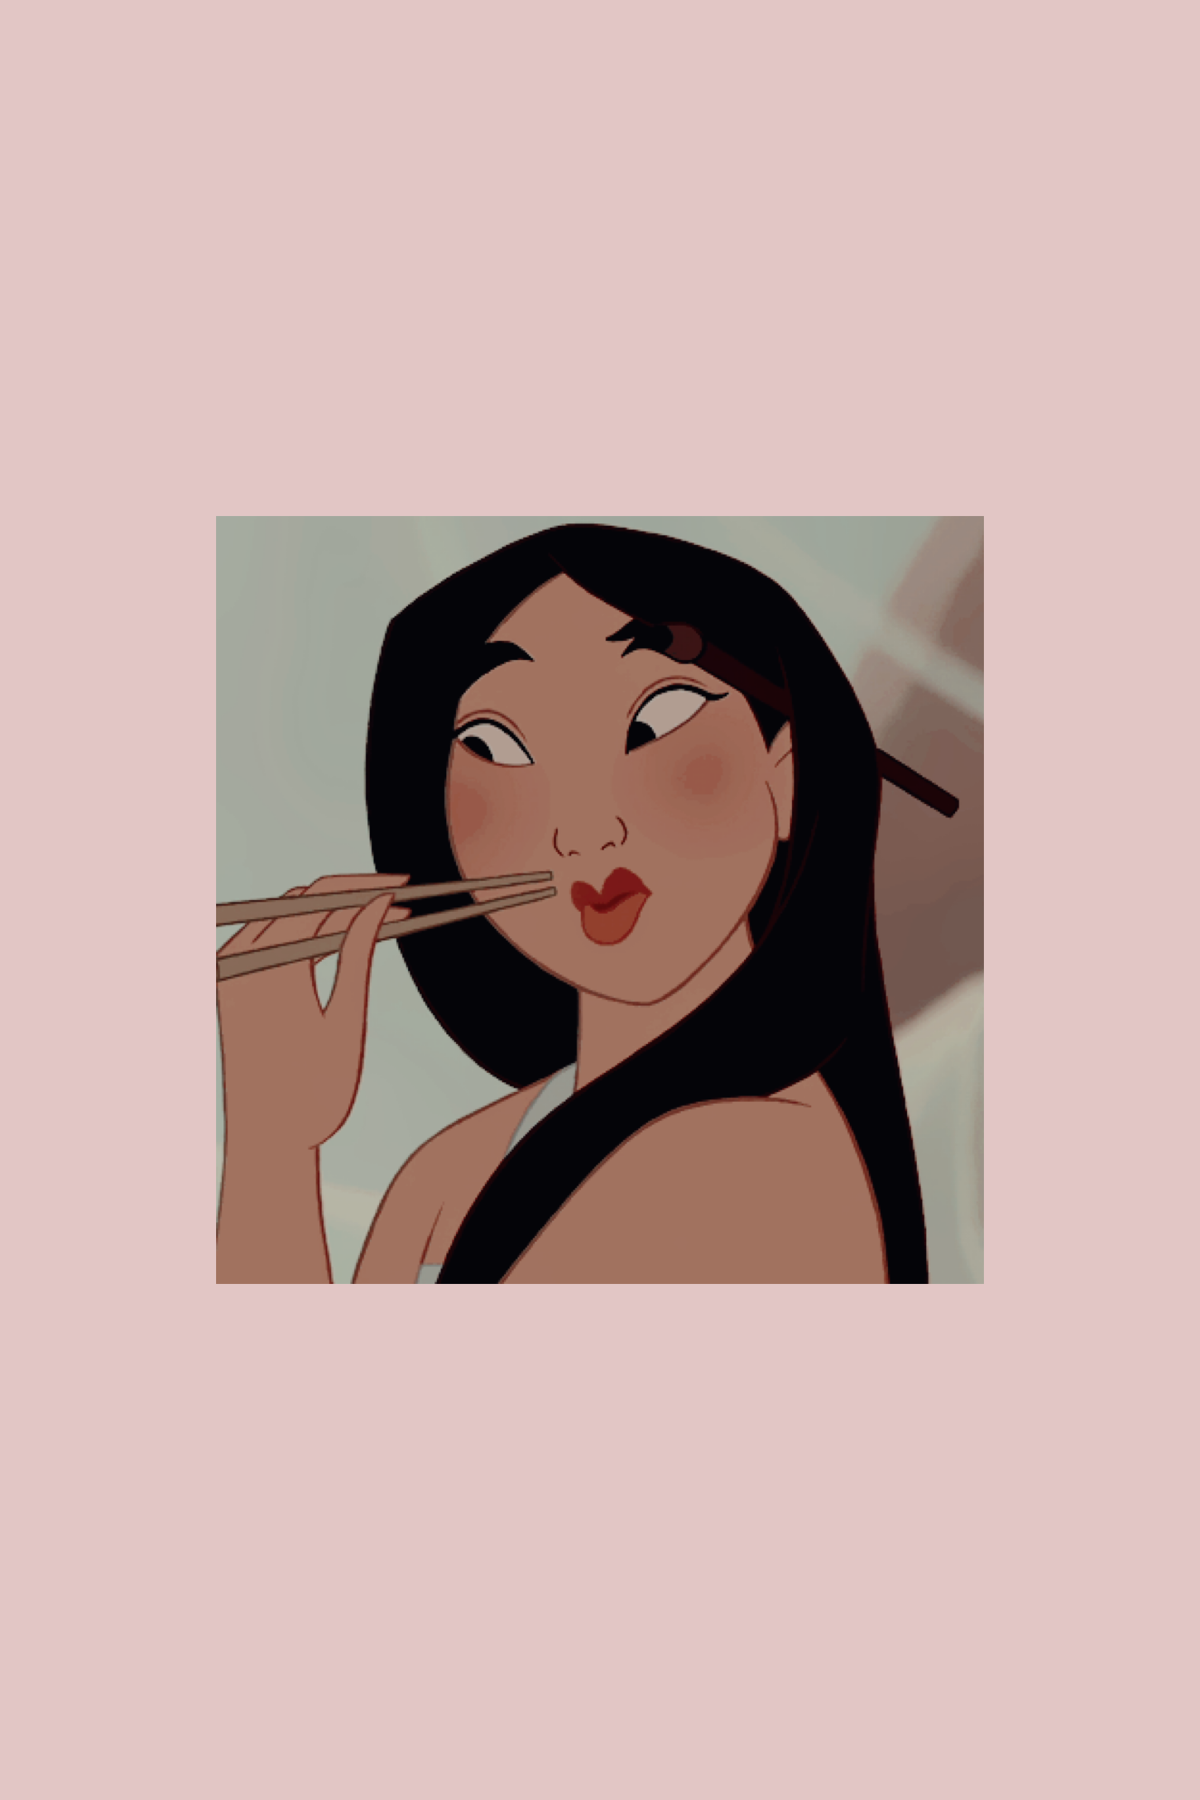 mulan aesthetic lockscreen Cute cartoon wallpapers Mulan